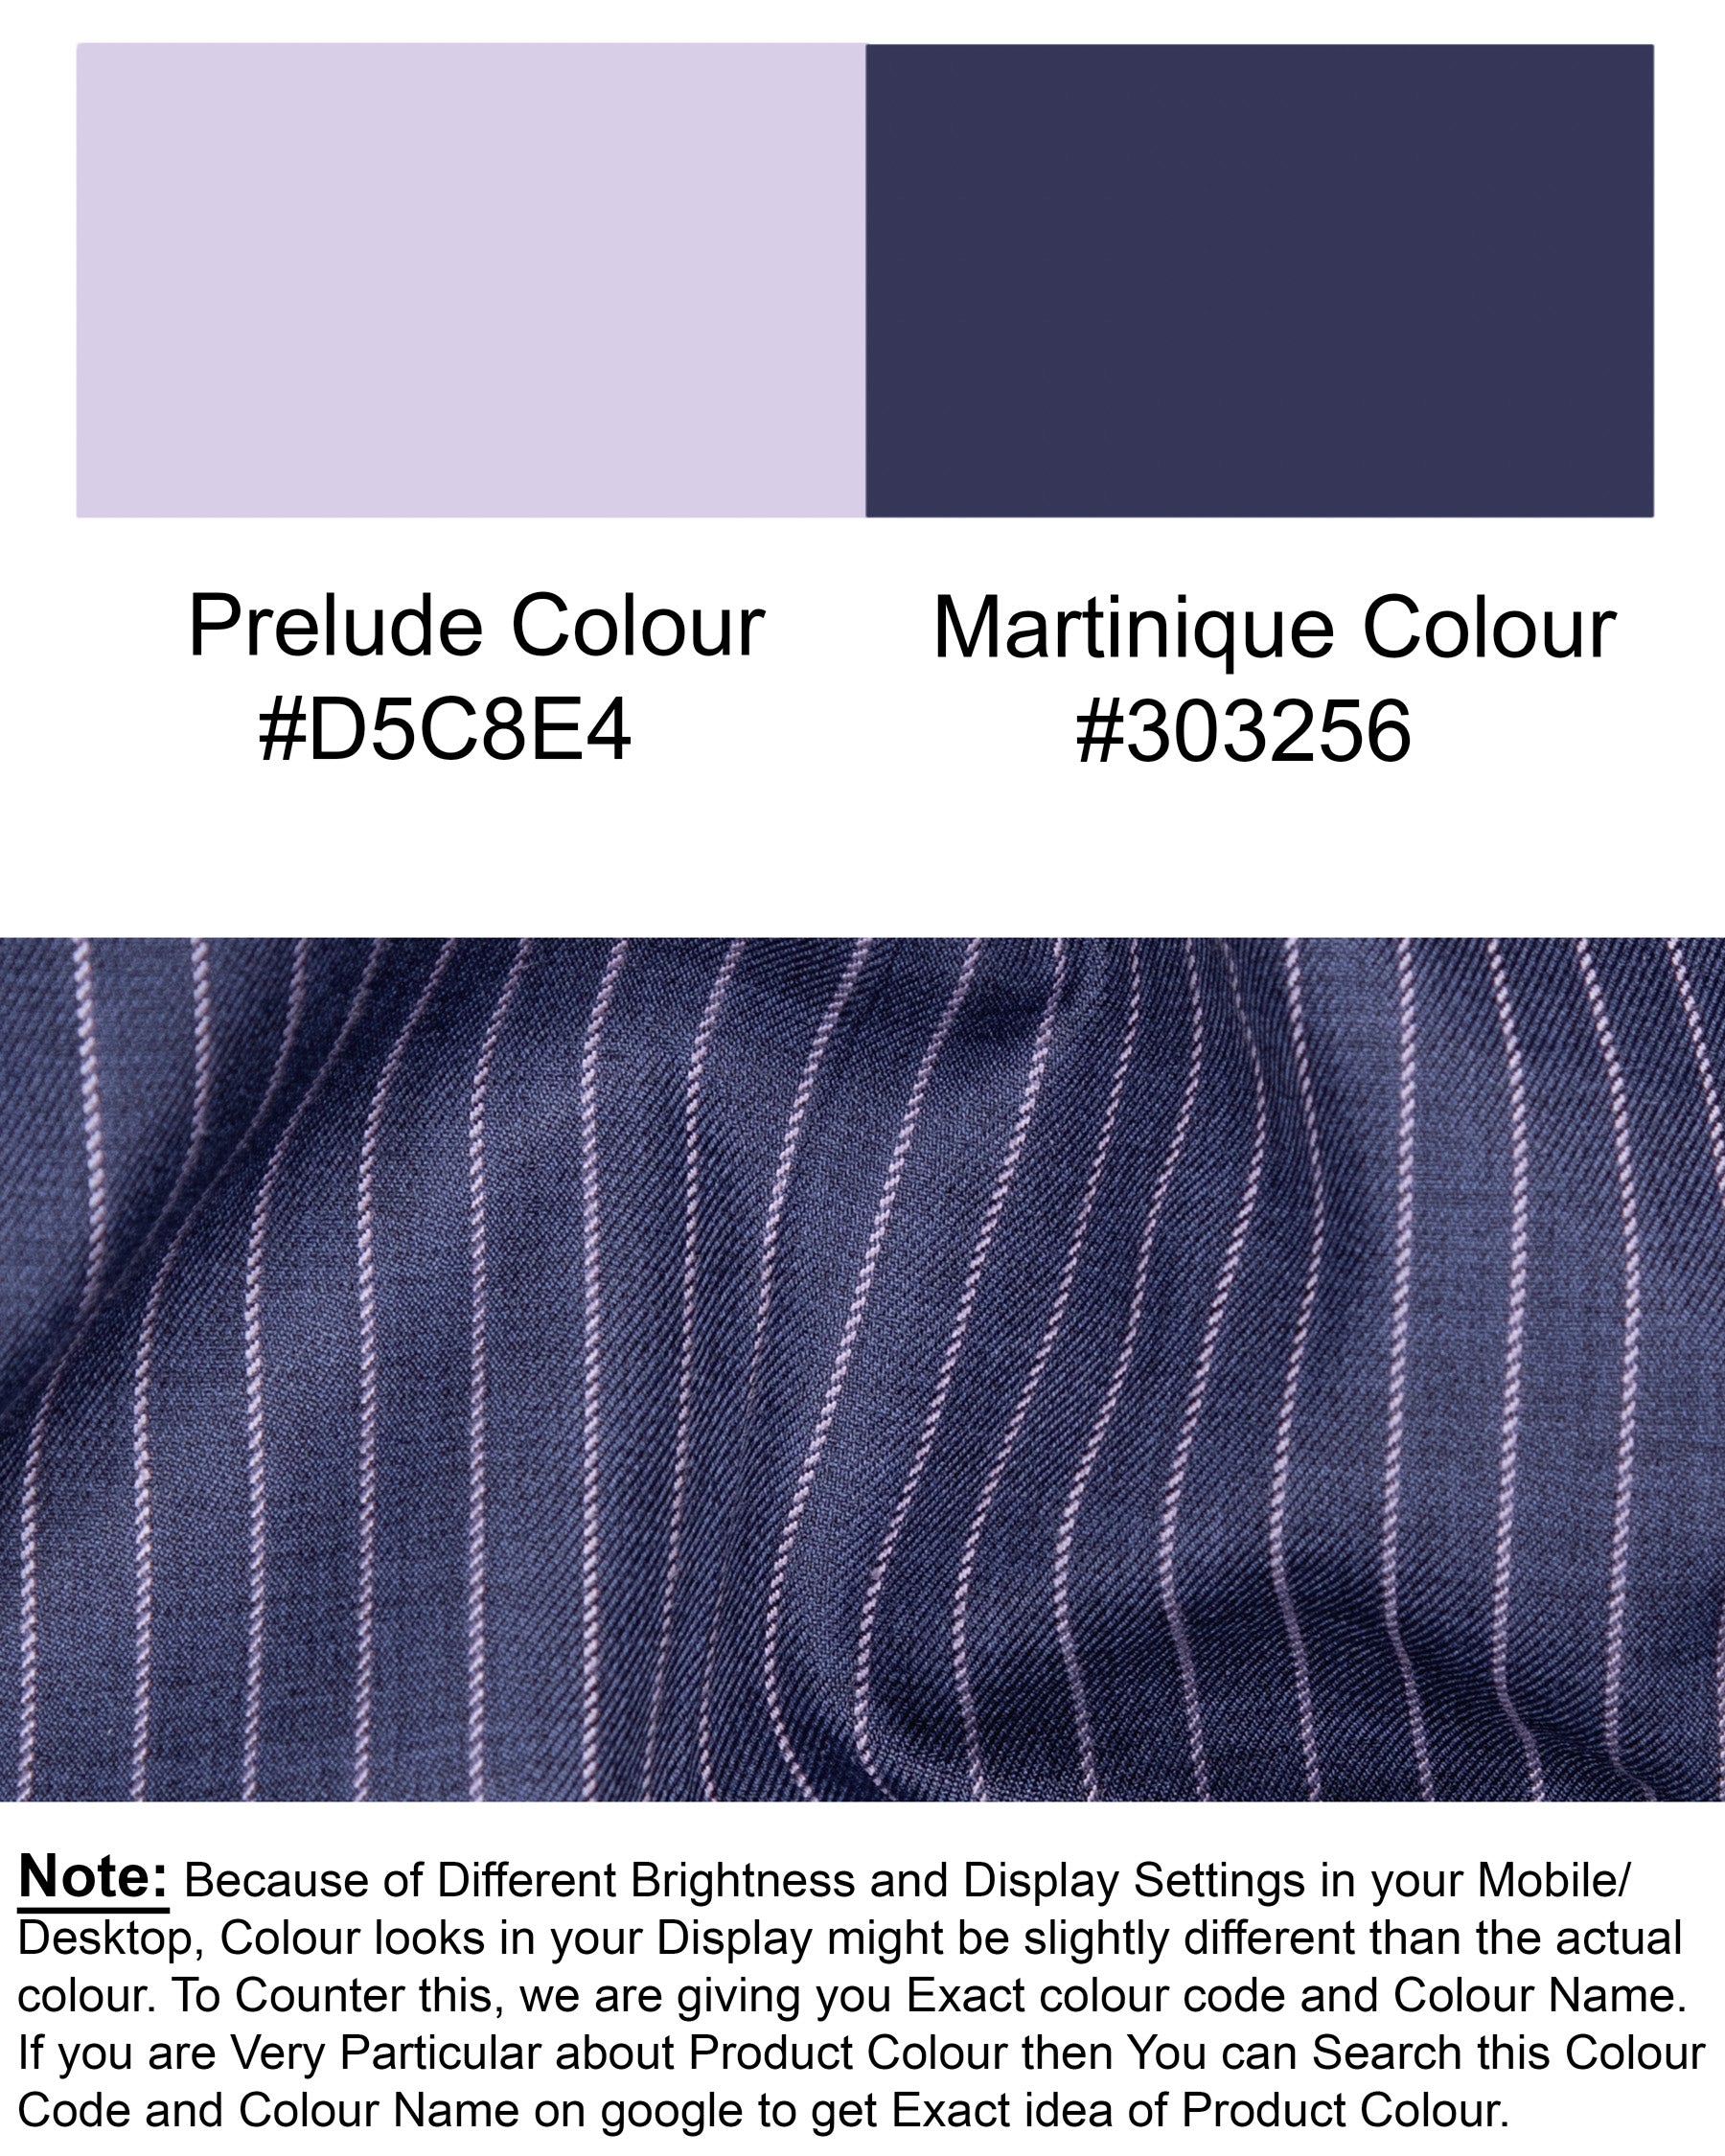 Martinique Blue with Prelude Striped Bandhgala/Mandarin Corduroy Premium Cotton Blazer BL1298-CBG-36, BL1298-CBG-38, BL1298-CBG-40, BL1298-CBG-42, BL1298-CBG-44, BL1298-CBG-46, BL1298-CBG-48, BL1298-CBG-50, BL1298-CBG-52, BL1298-CBG-54, BL1298-CBG-56, BL1298-CBG-58, BL1298-CBG-60